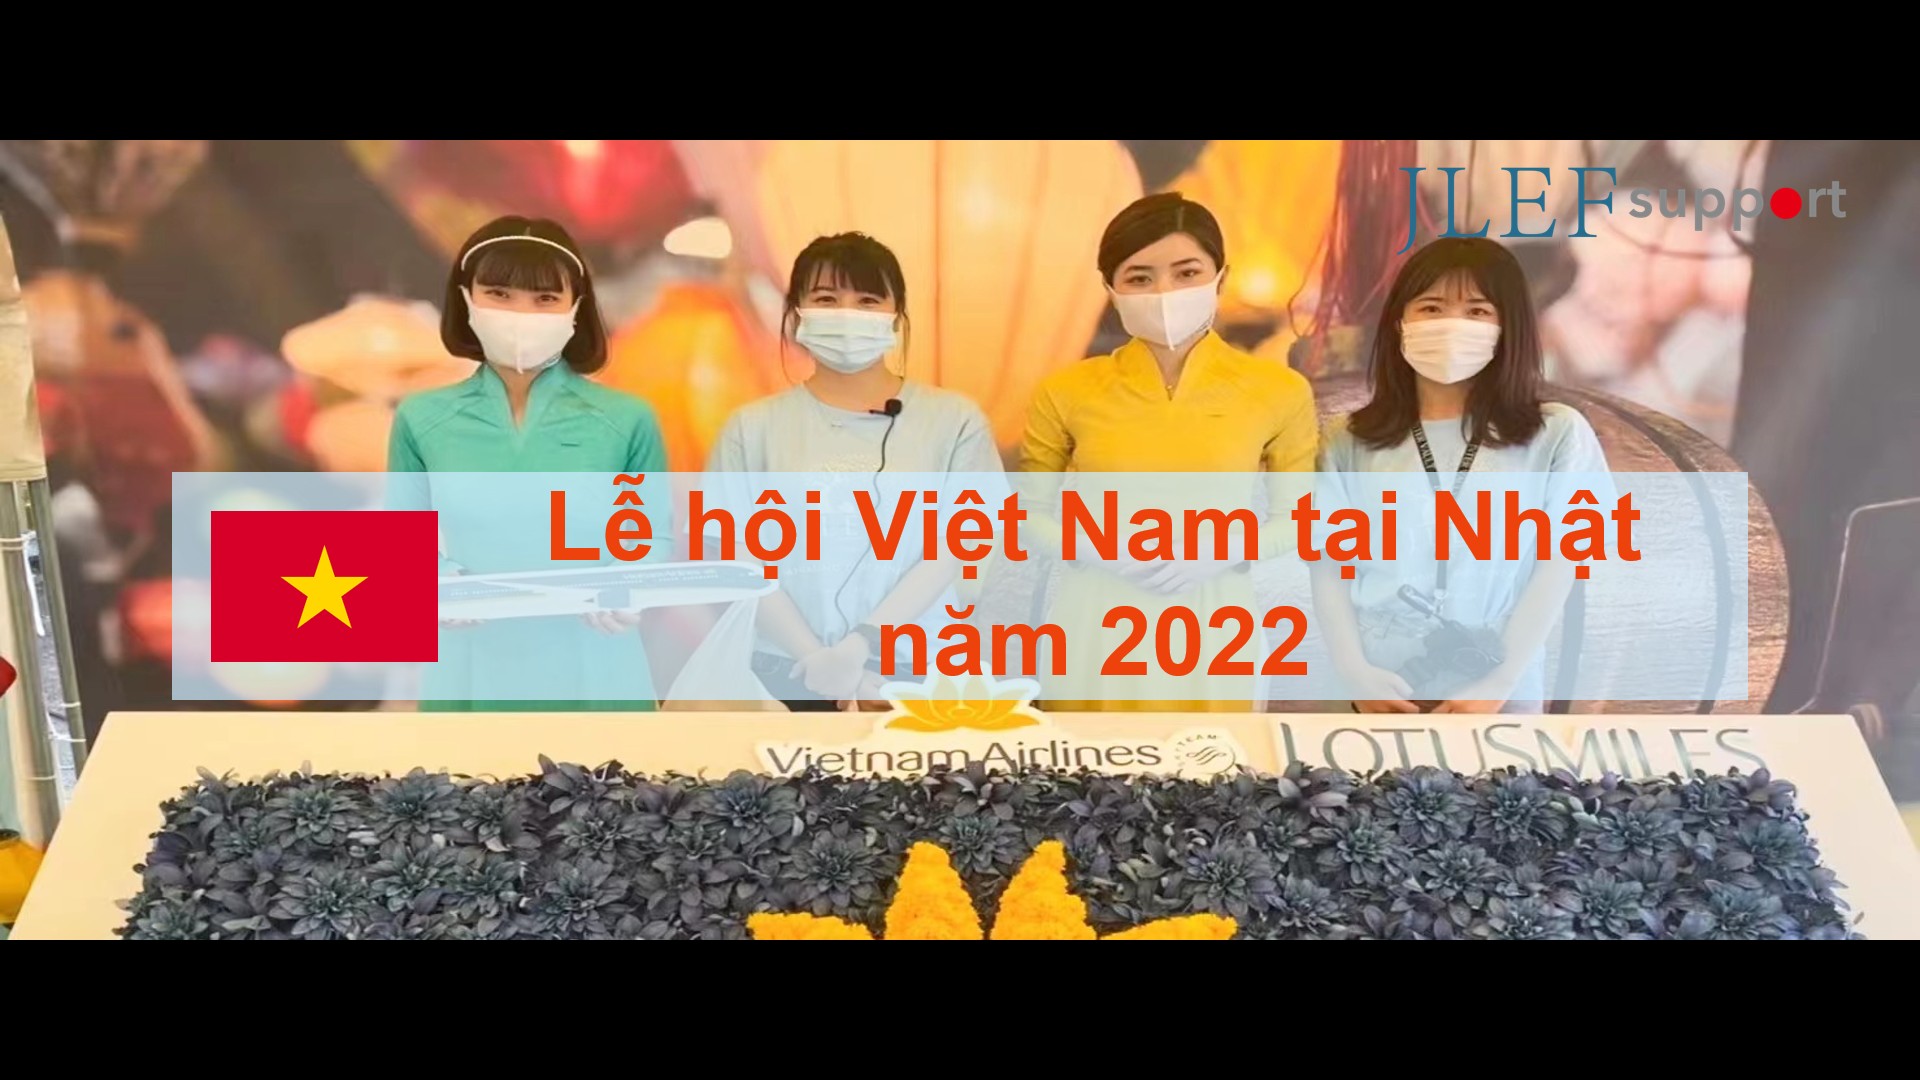 Lễ hội Việt nam tại Nhật năm 2022 được tổ chức ở Công viên Yoyogi